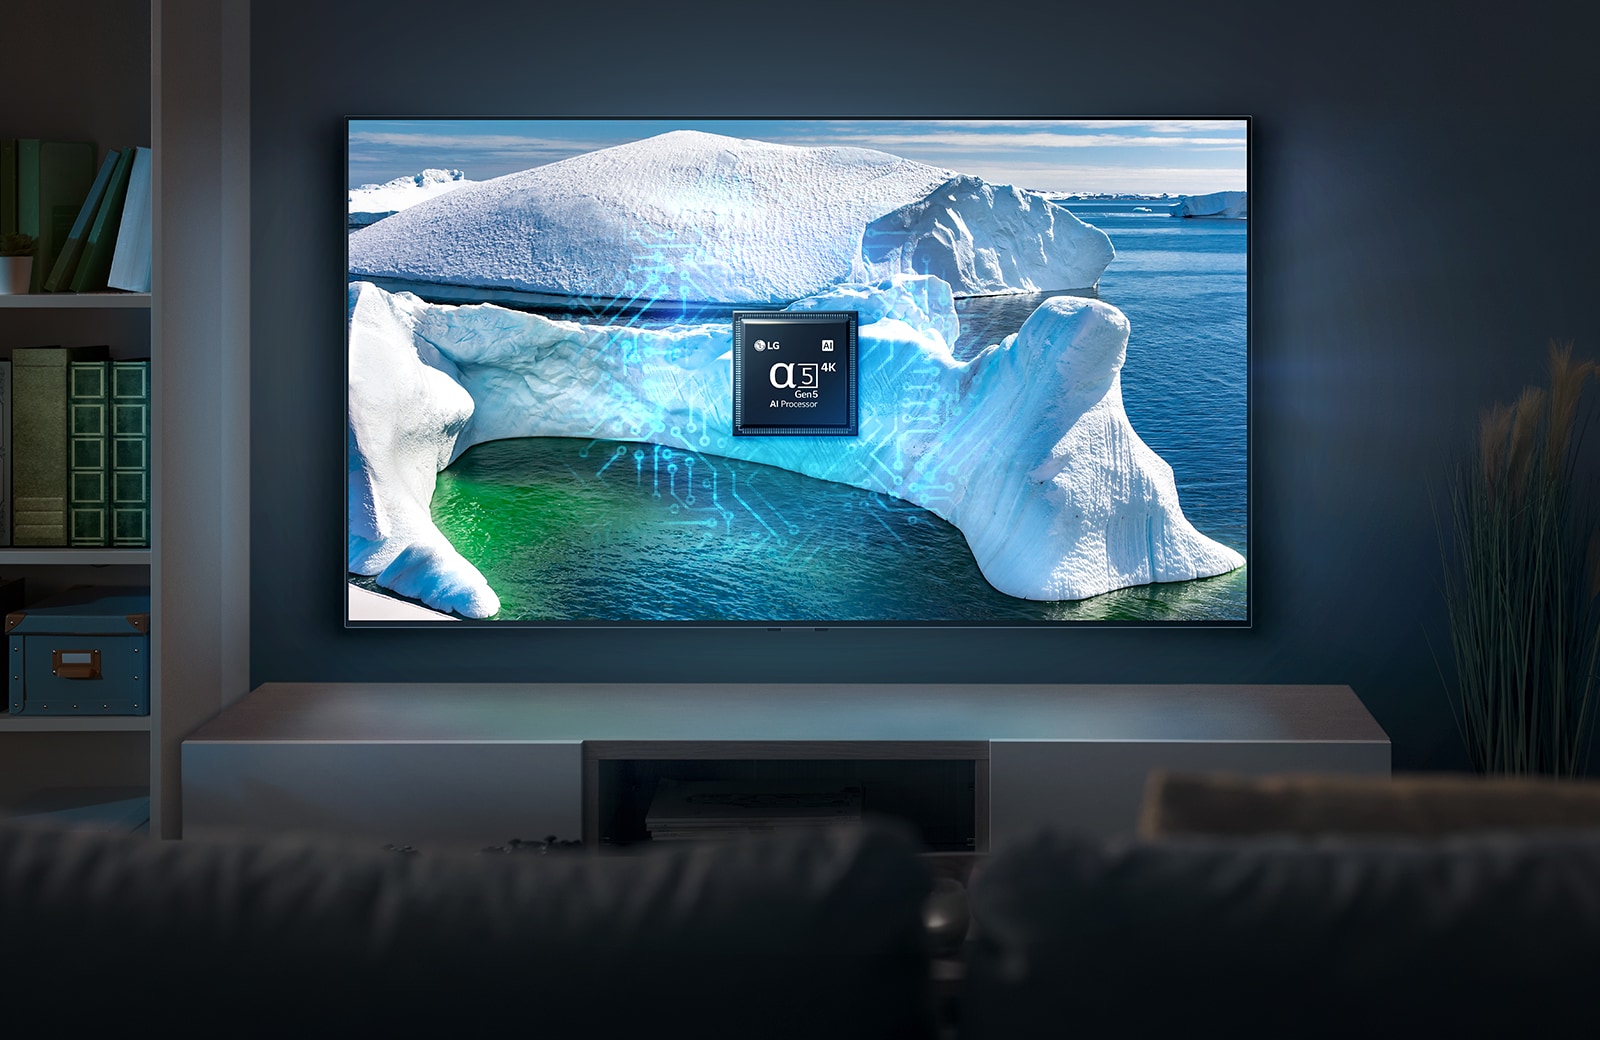 هذا النهر الجليدي معرض على شاشة التلفزيون. التلفزيون موضوع في غرفة معيشة واسعة بخلفية زرقاء.